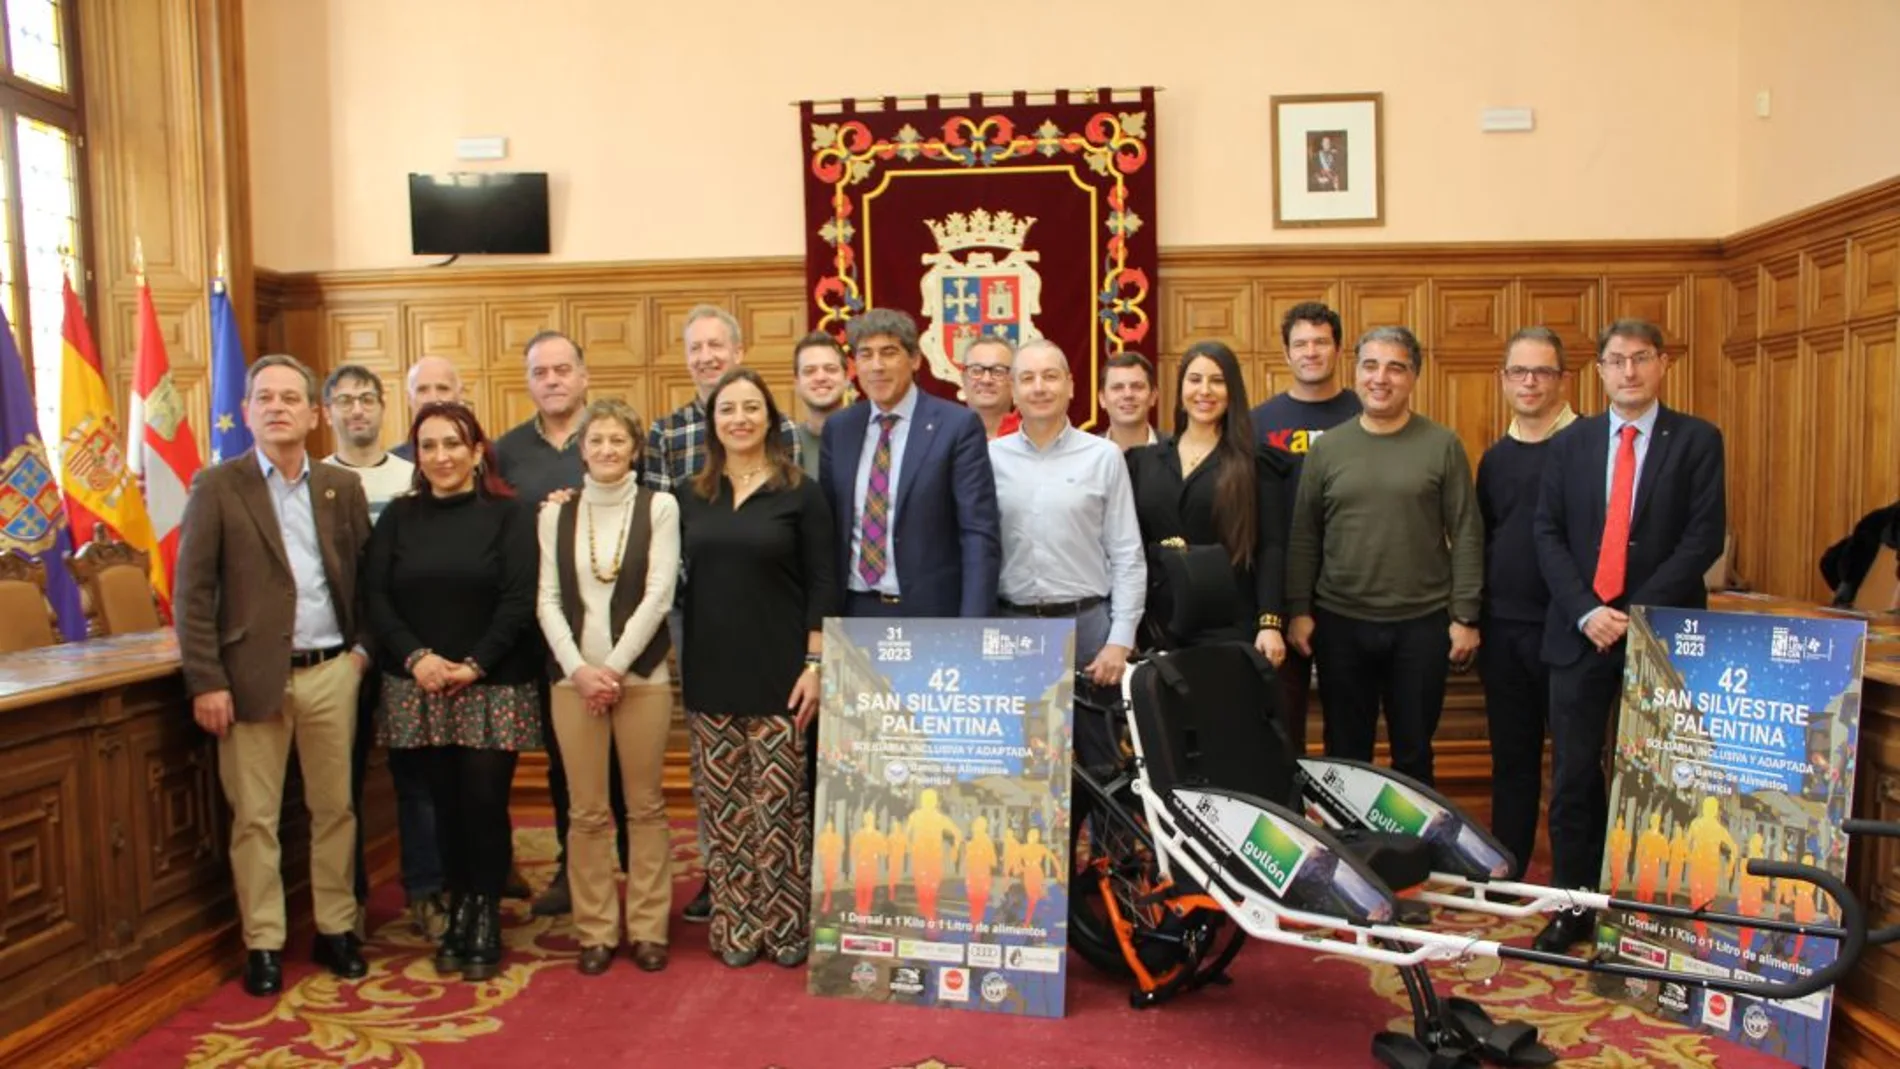 Presentación de la silla para personas con movilidad reducida donada por Galletas Gullón al Ayuntamiento de Palencia